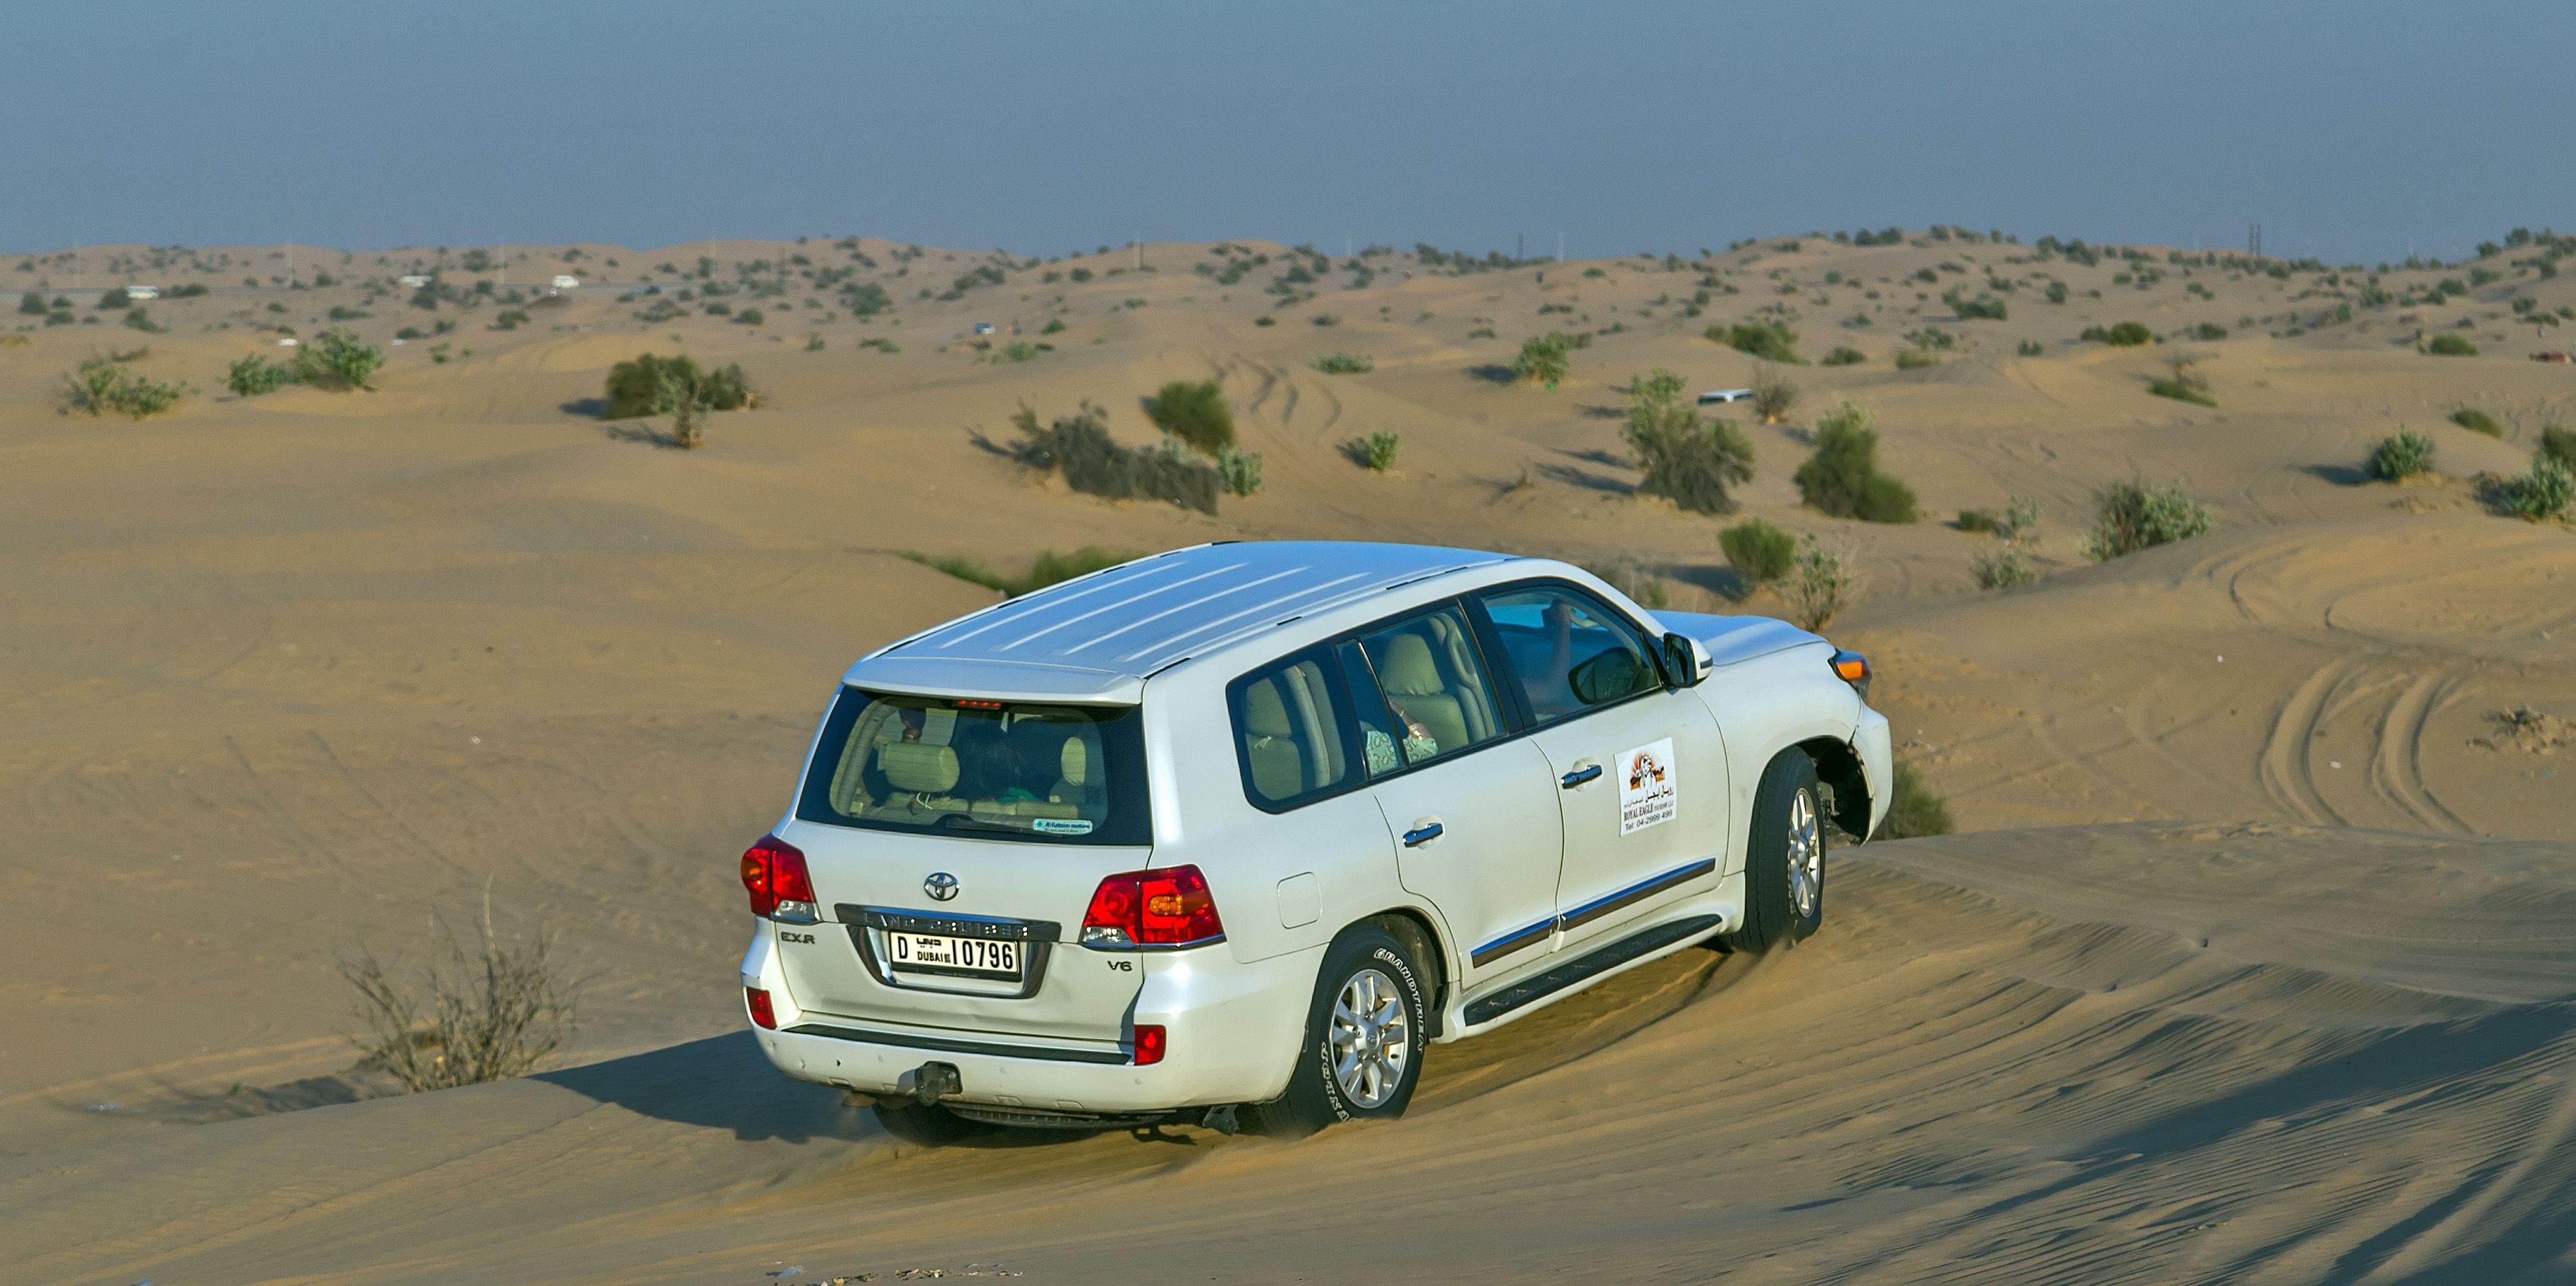 SUV Rentals in Dubai